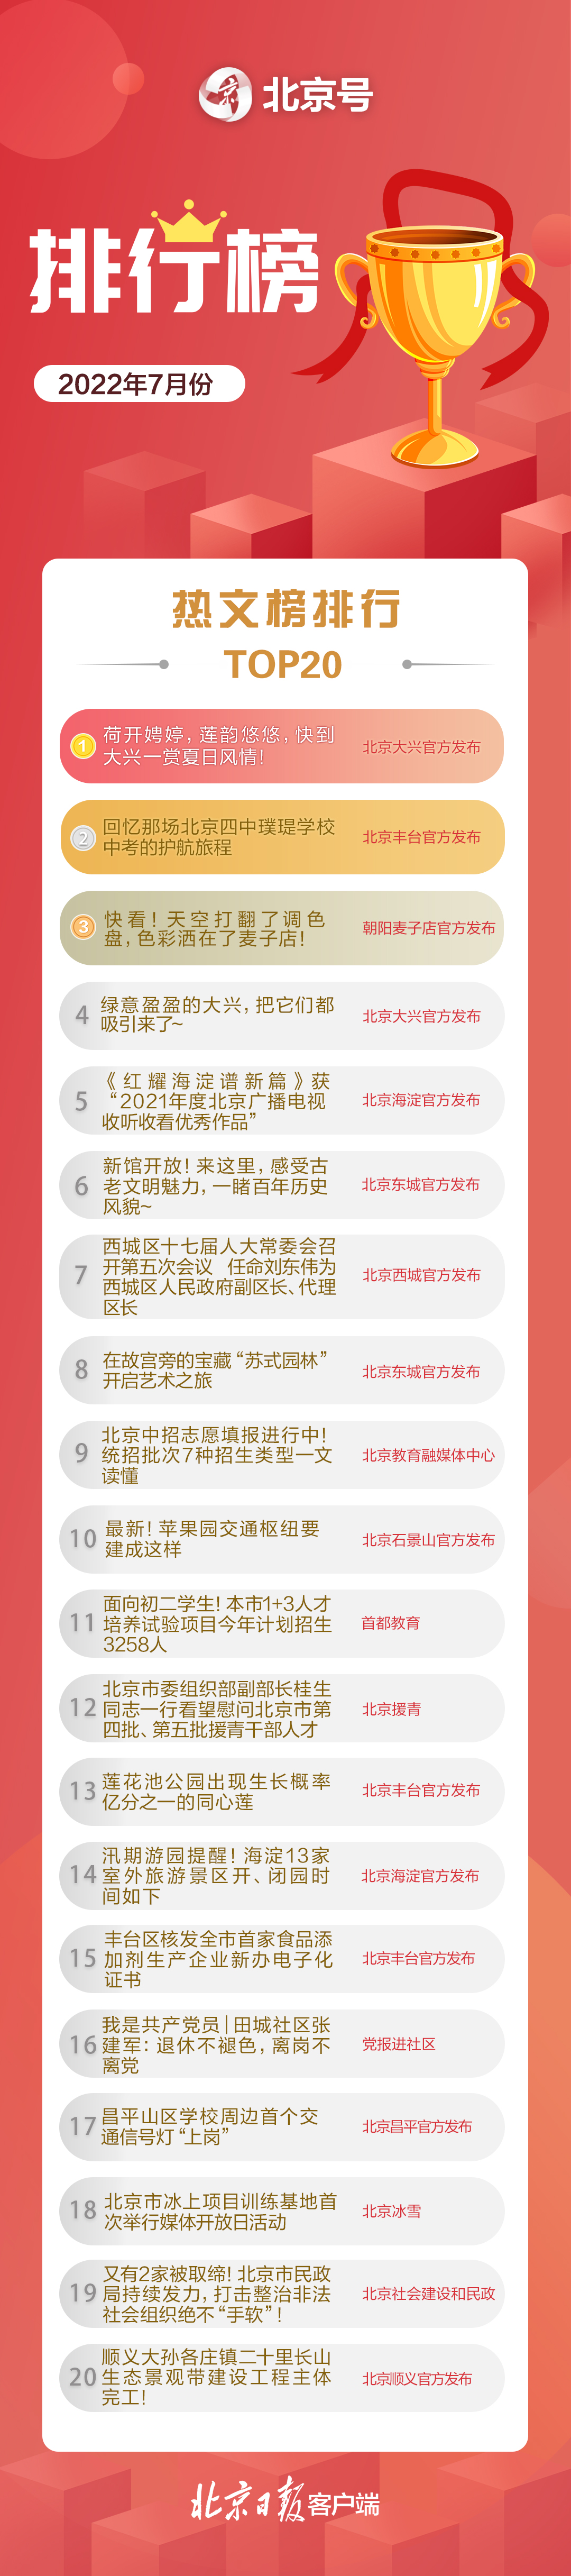 北京号2022年三季度影响力和热文排行榜出炉app推广30元一单平台潜艇事故